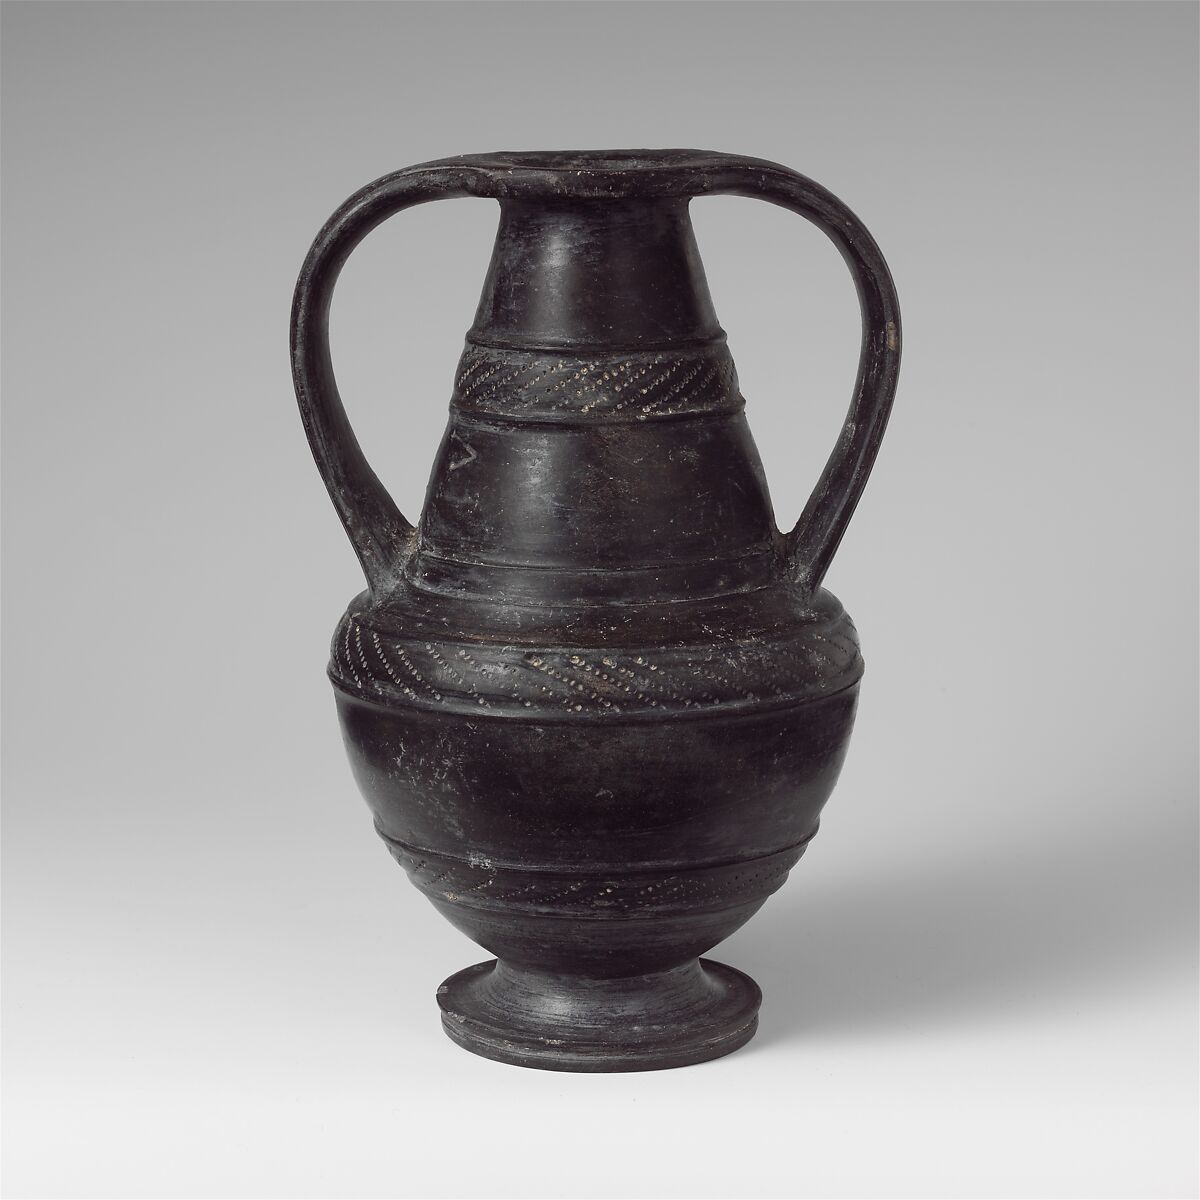 Terracotta Nicosthenic neck-amphora (jar), Terracotta, Etruscan 